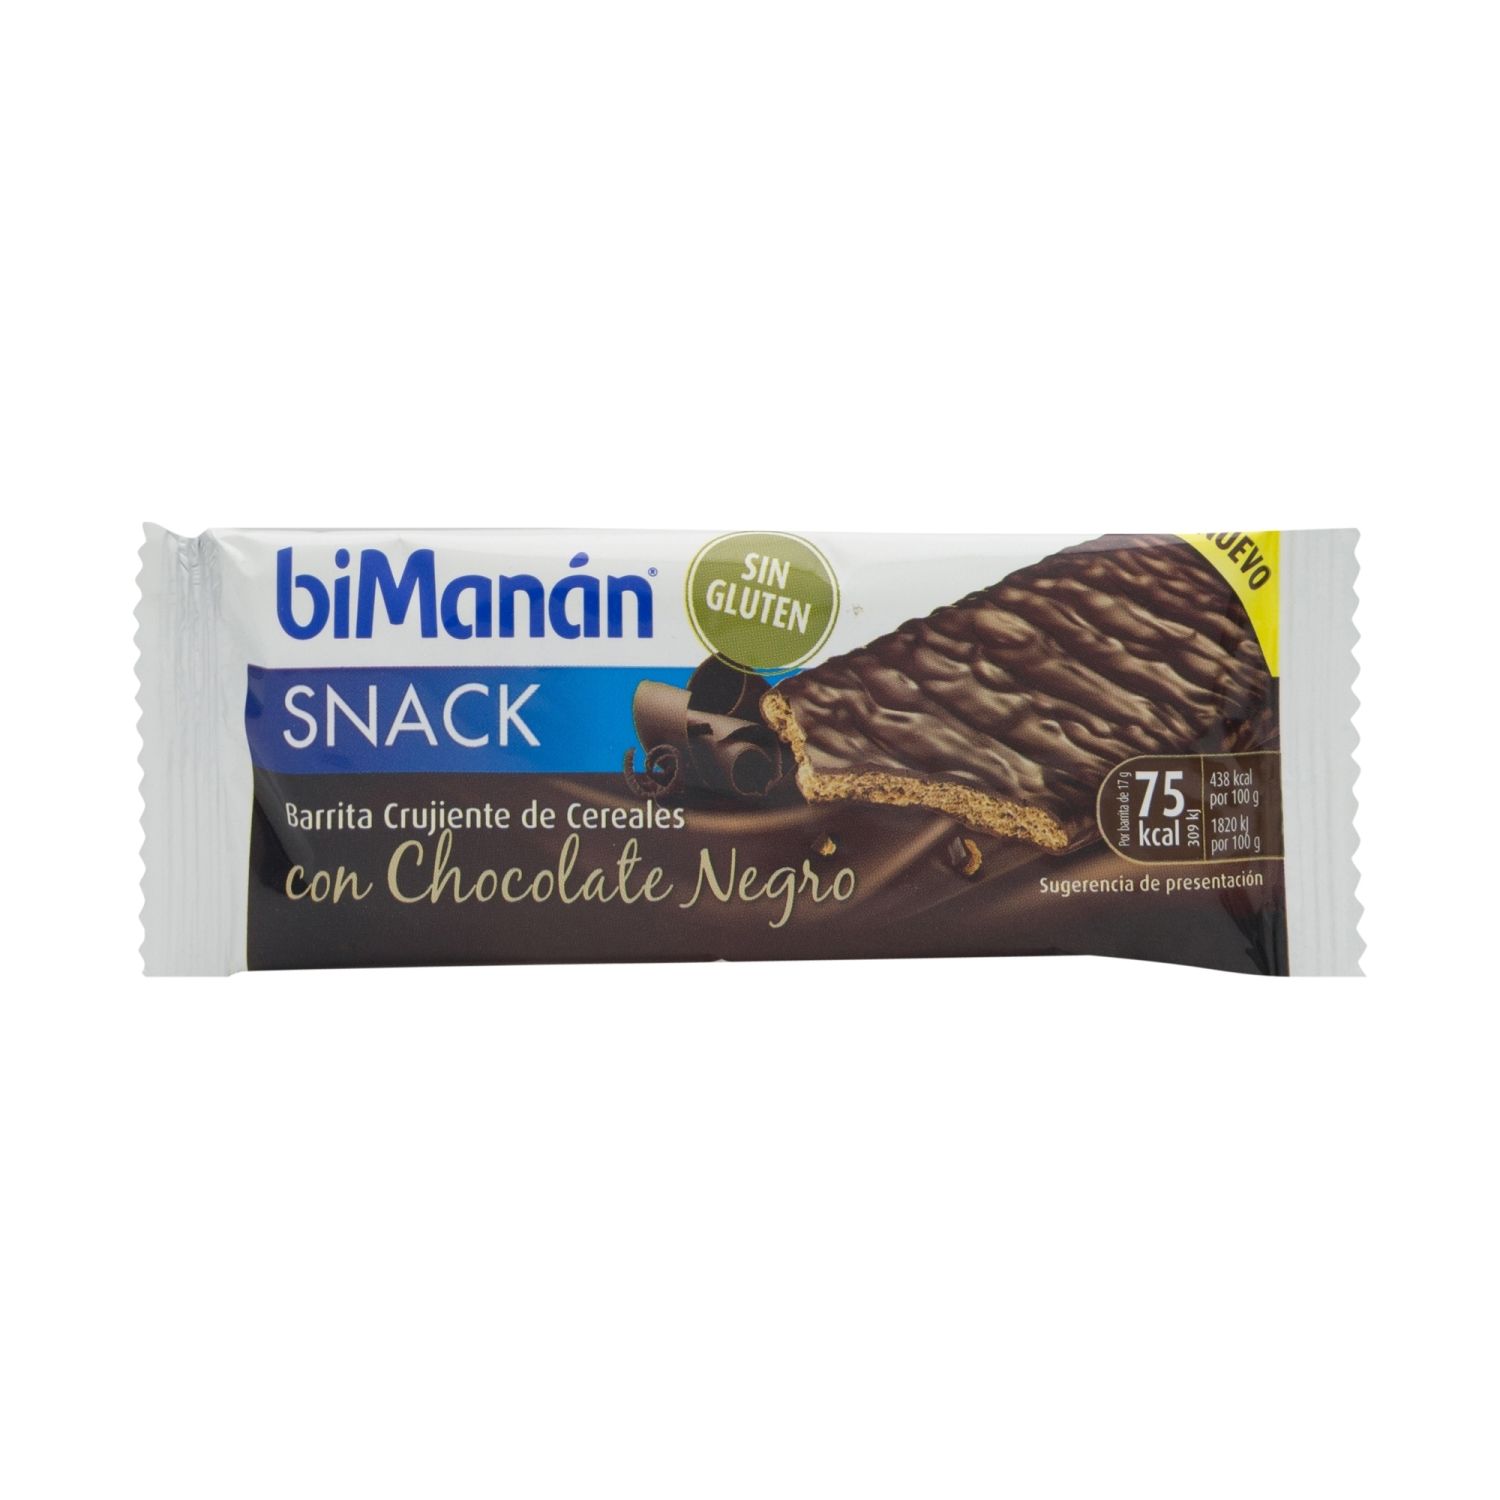 biman n snack chocolate negro 1 unidad